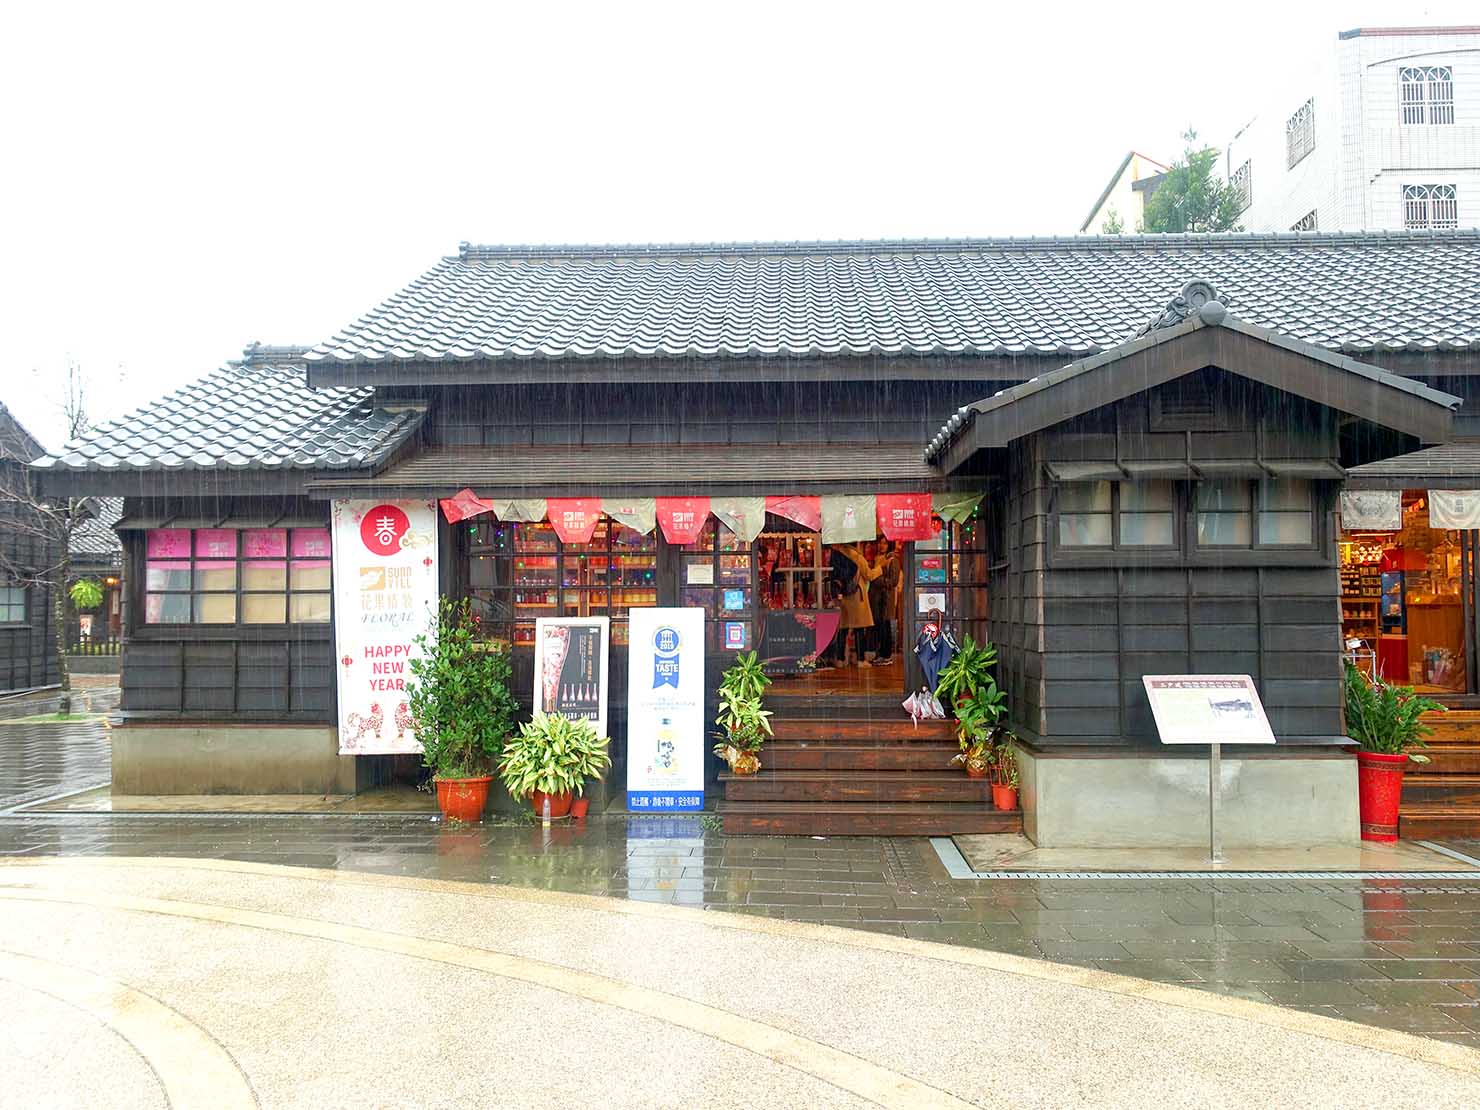 嘉義のおすすめ観光スポット「檜意森活村」入口に建つ日本式家屋